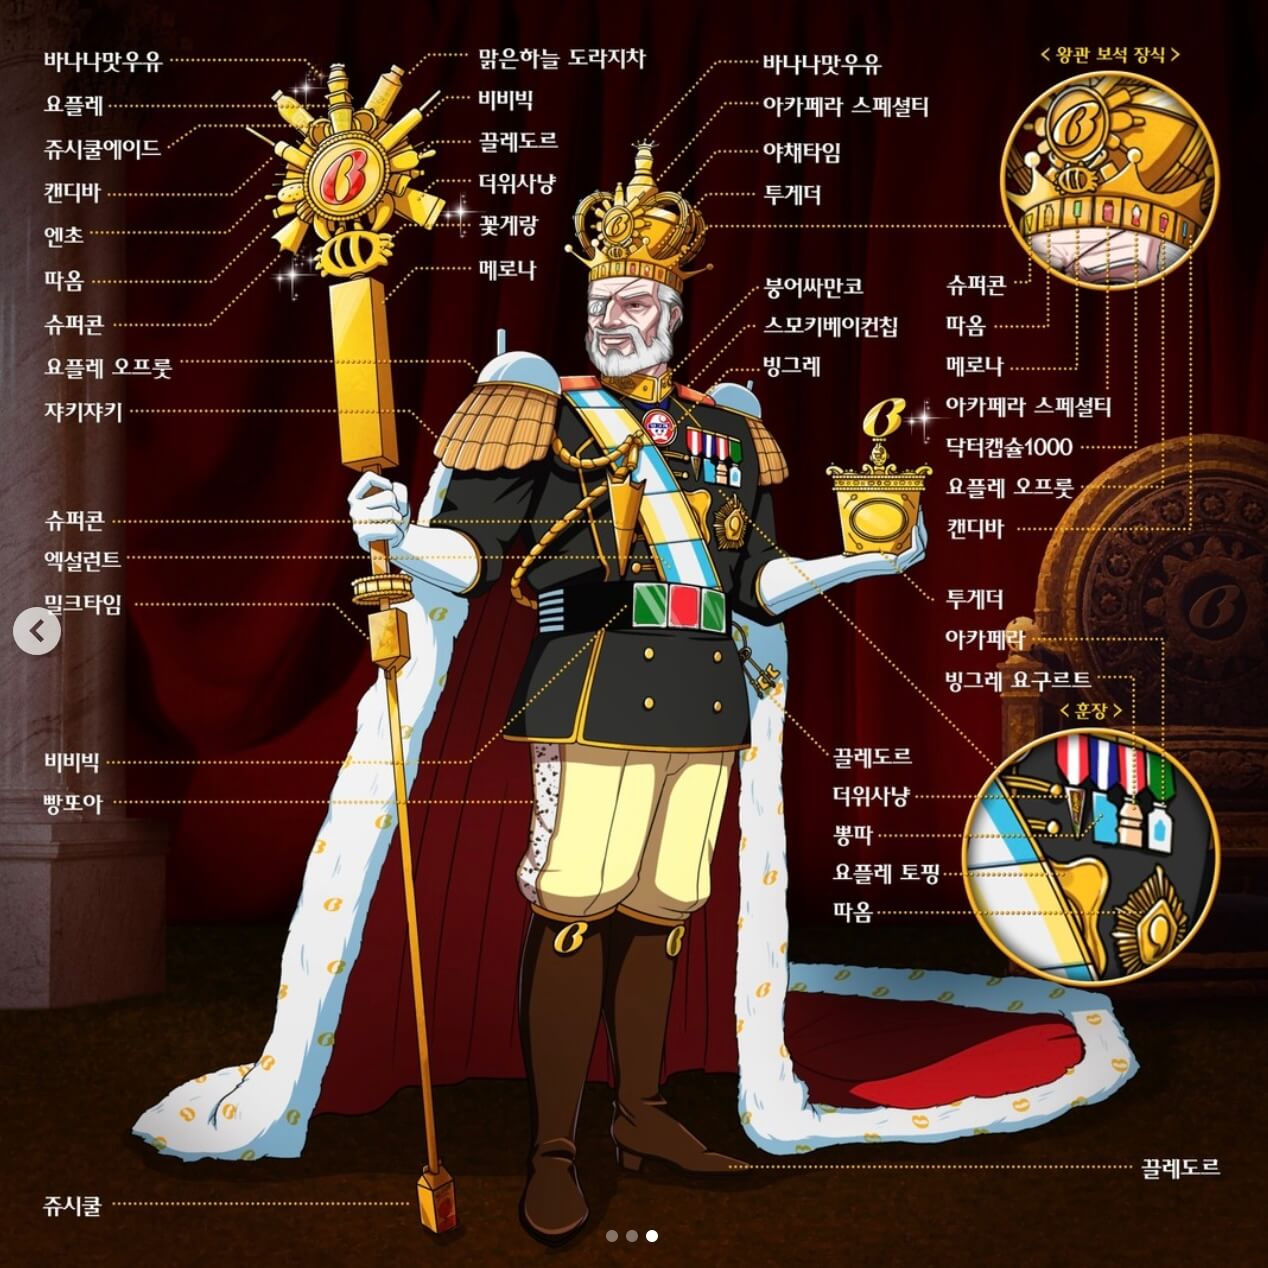 빙그레 왕국의 왕자 '빙그레우스' 와 '빙그레오우너'의 세부 설정 이미지